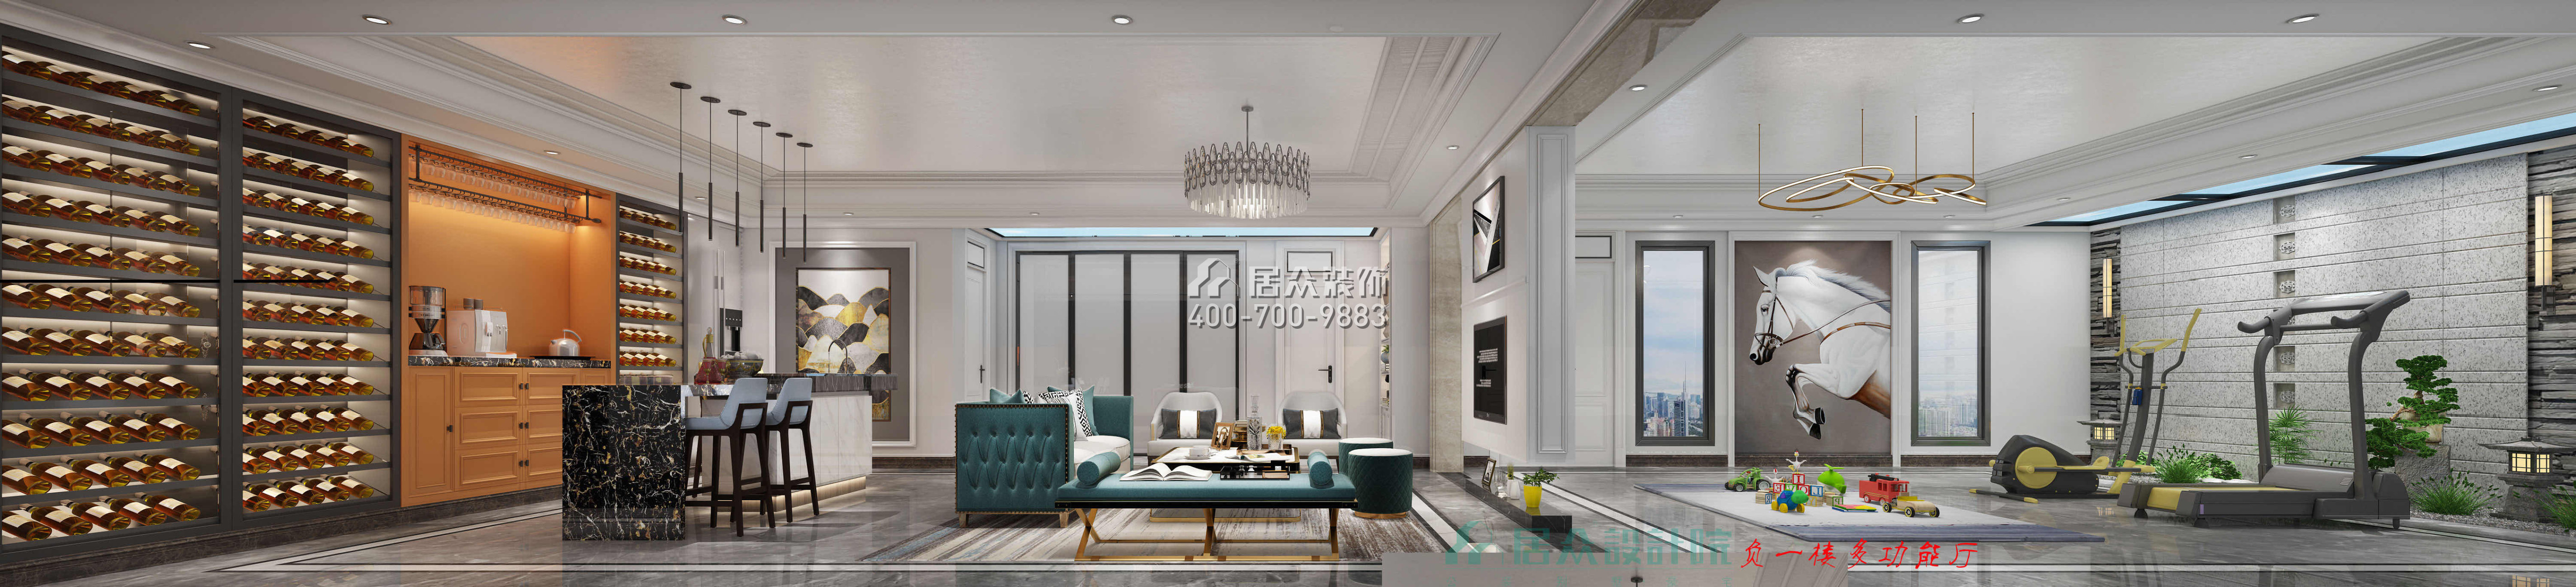 紫檀山700平方米现代简约风格别墅户型客厅装修效果图